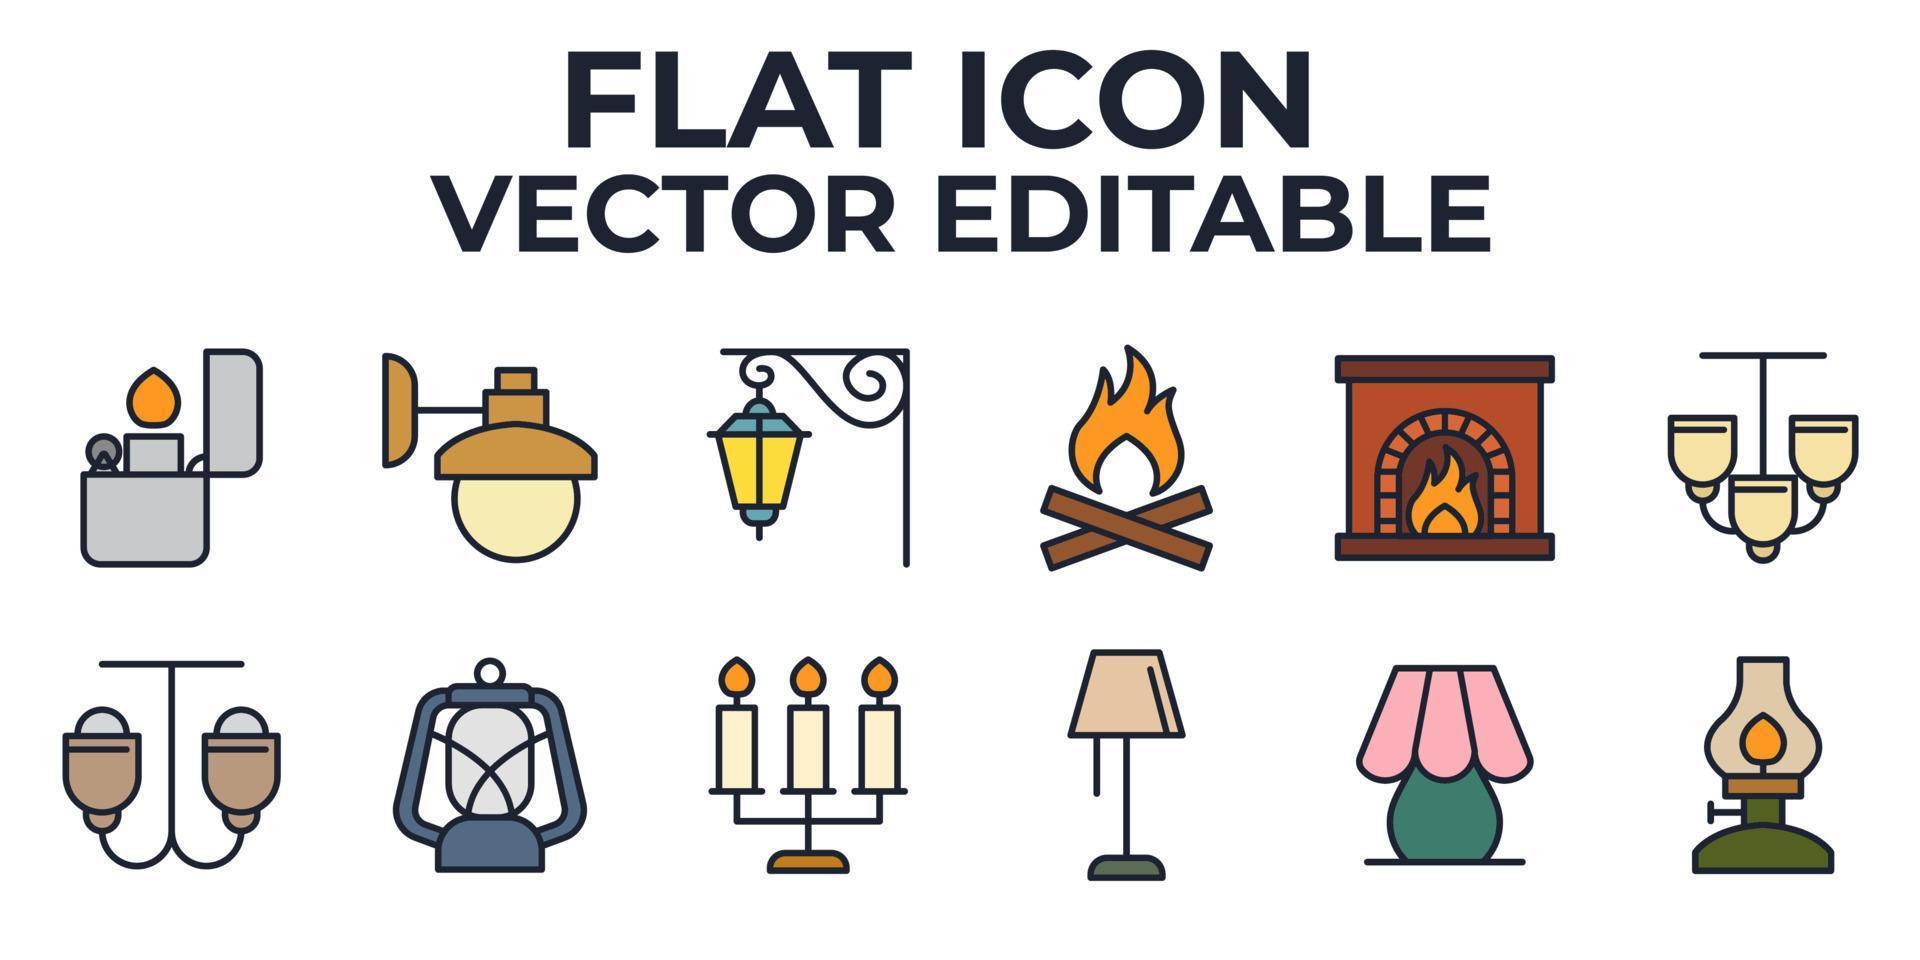 plantilla de símbolo de icono de conjunto de luces para ilustración de vector de logotipo de colección de diseño gráfico y web